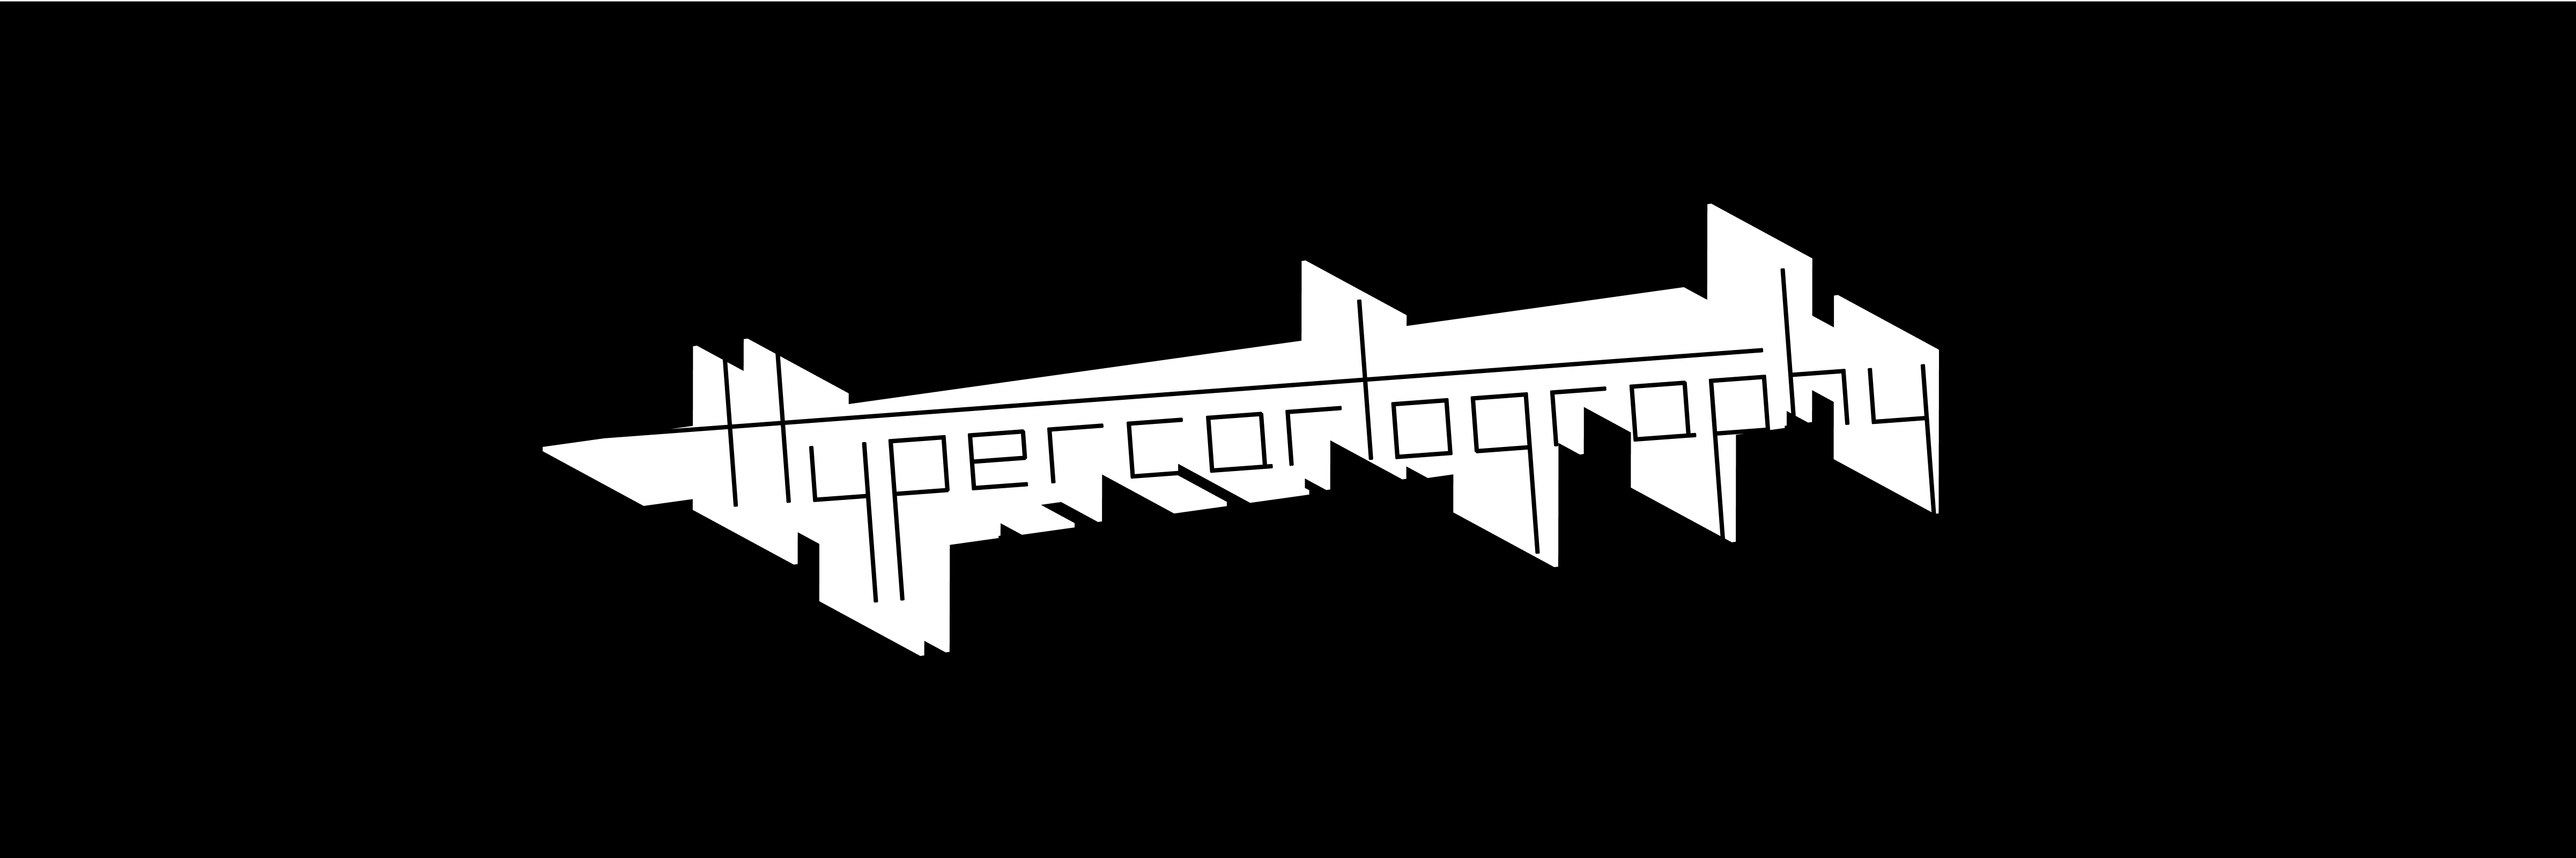 simon-p-coyle-branding-logo-design-2016-hypercartography